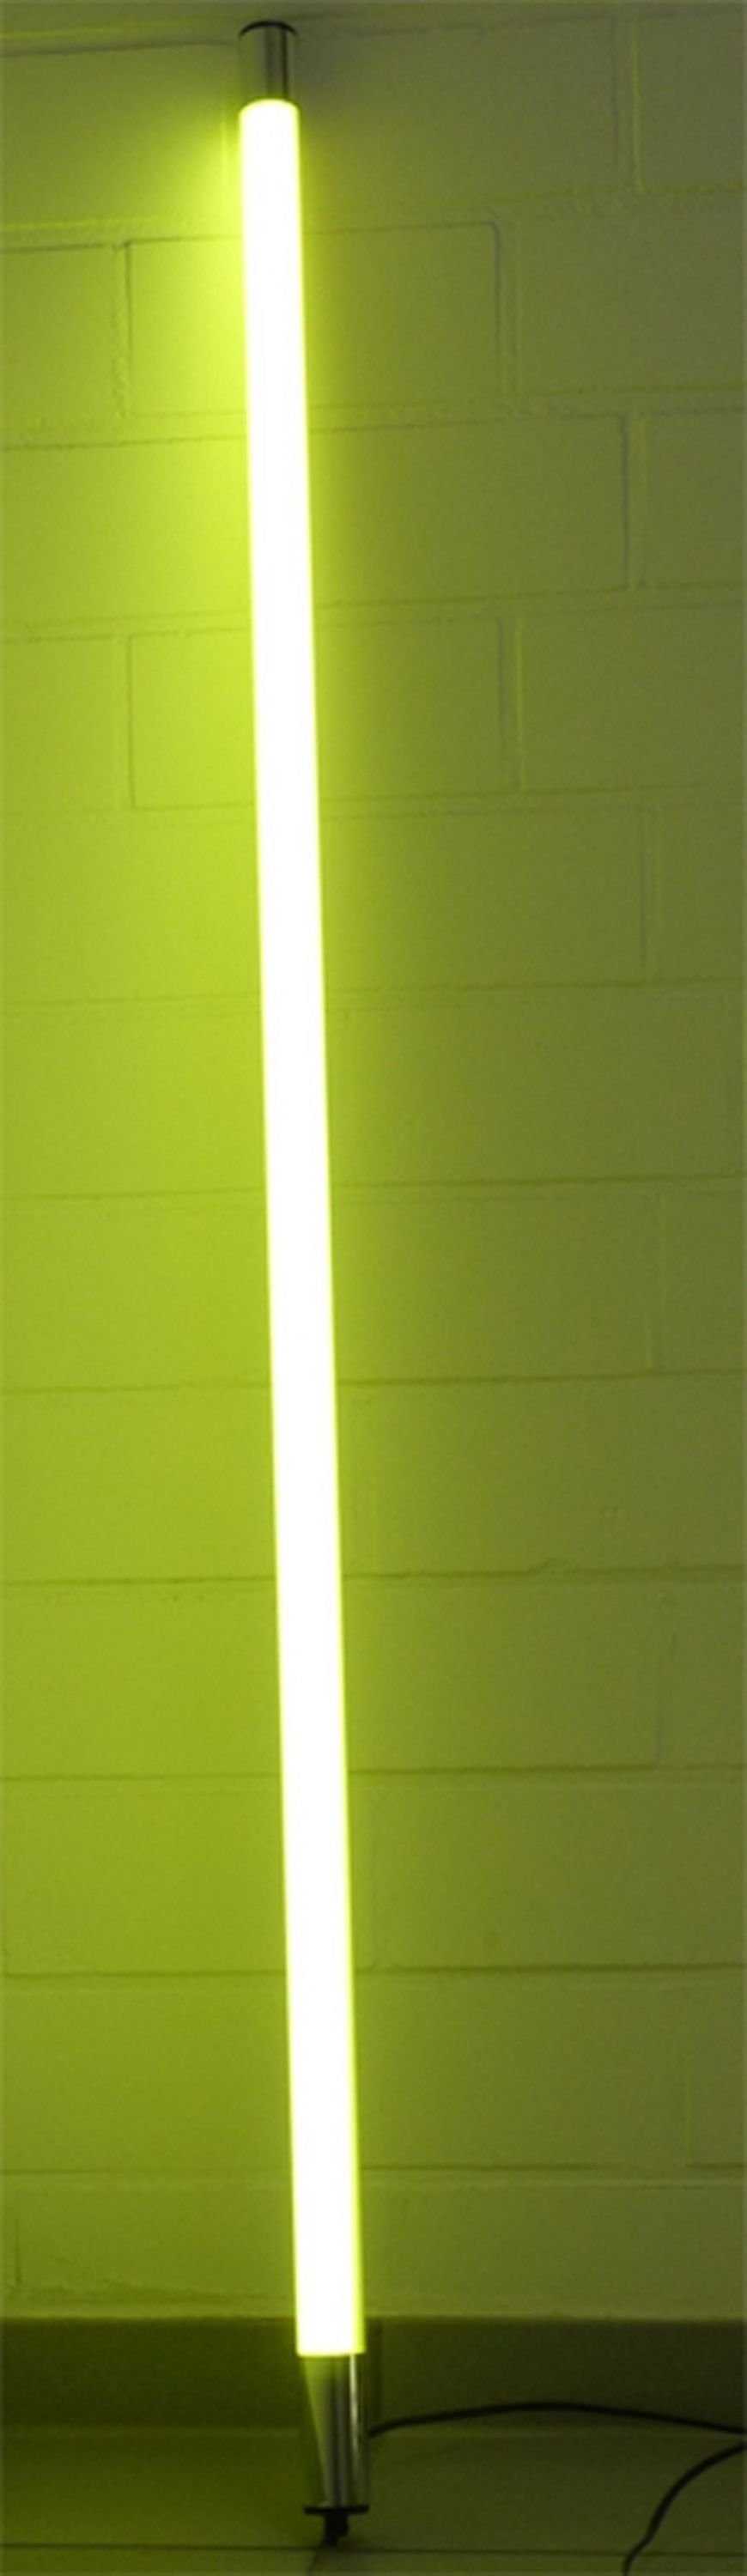 XENON LED Wandleuchte LED Leuchtstab Satiniert 1,23m Länge 1700 Lumen IP44 für Außen Gelb, LED Röhre T8, Xenon Gelb